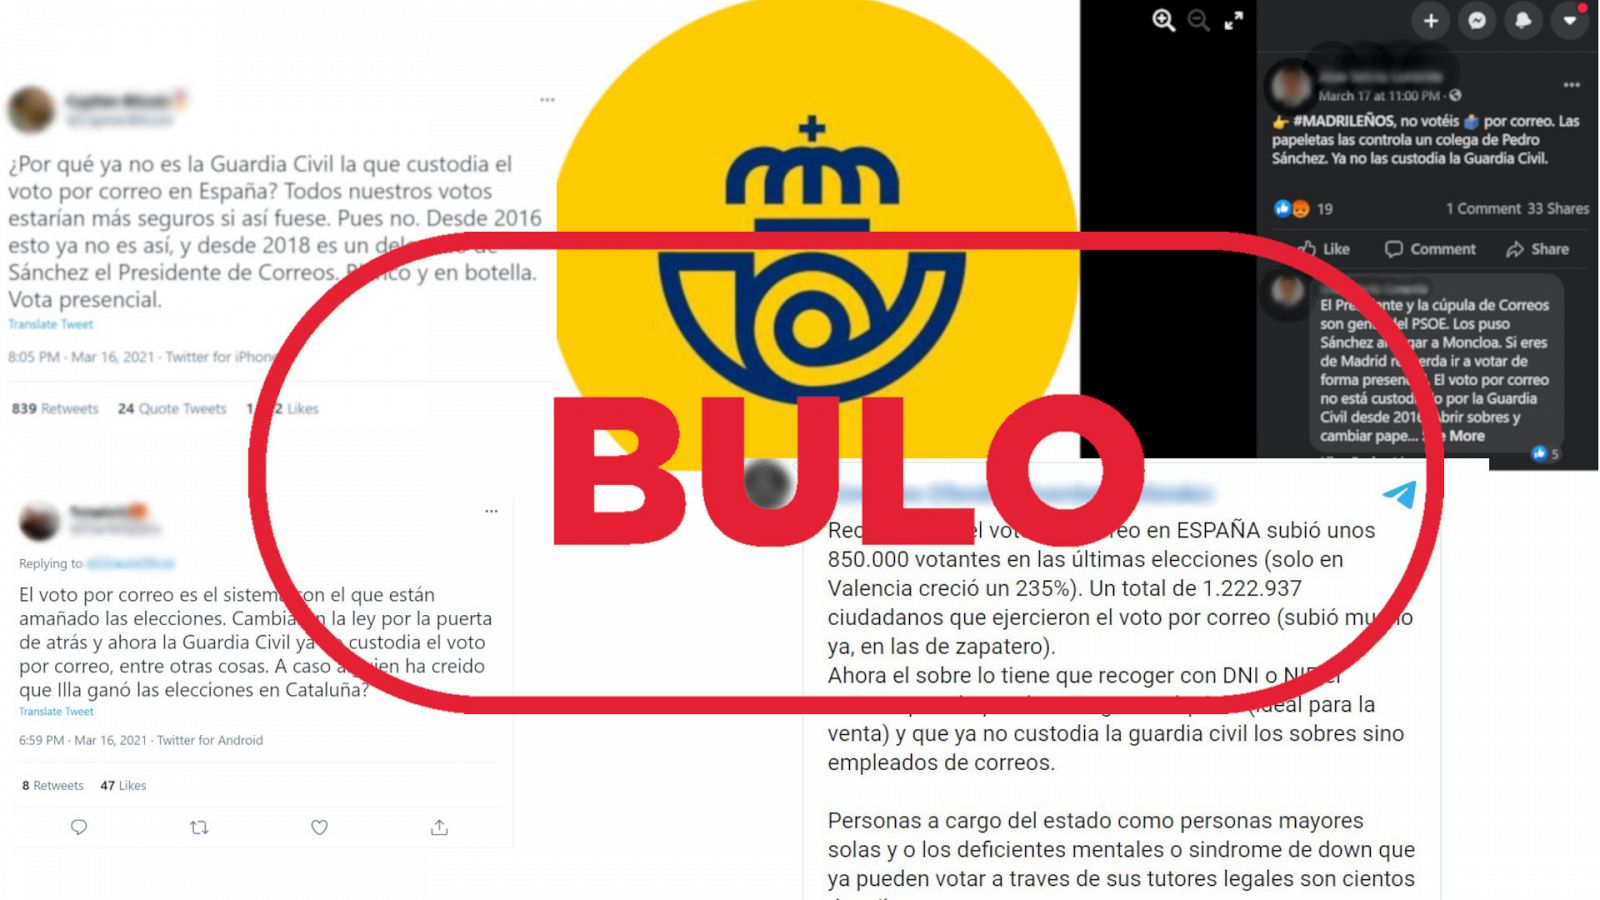 Mensajes de redes sociales que dicen que la Guardia Civil custodiaba el voto por correo con el sello en rojo de bulo de VerificaRTVE